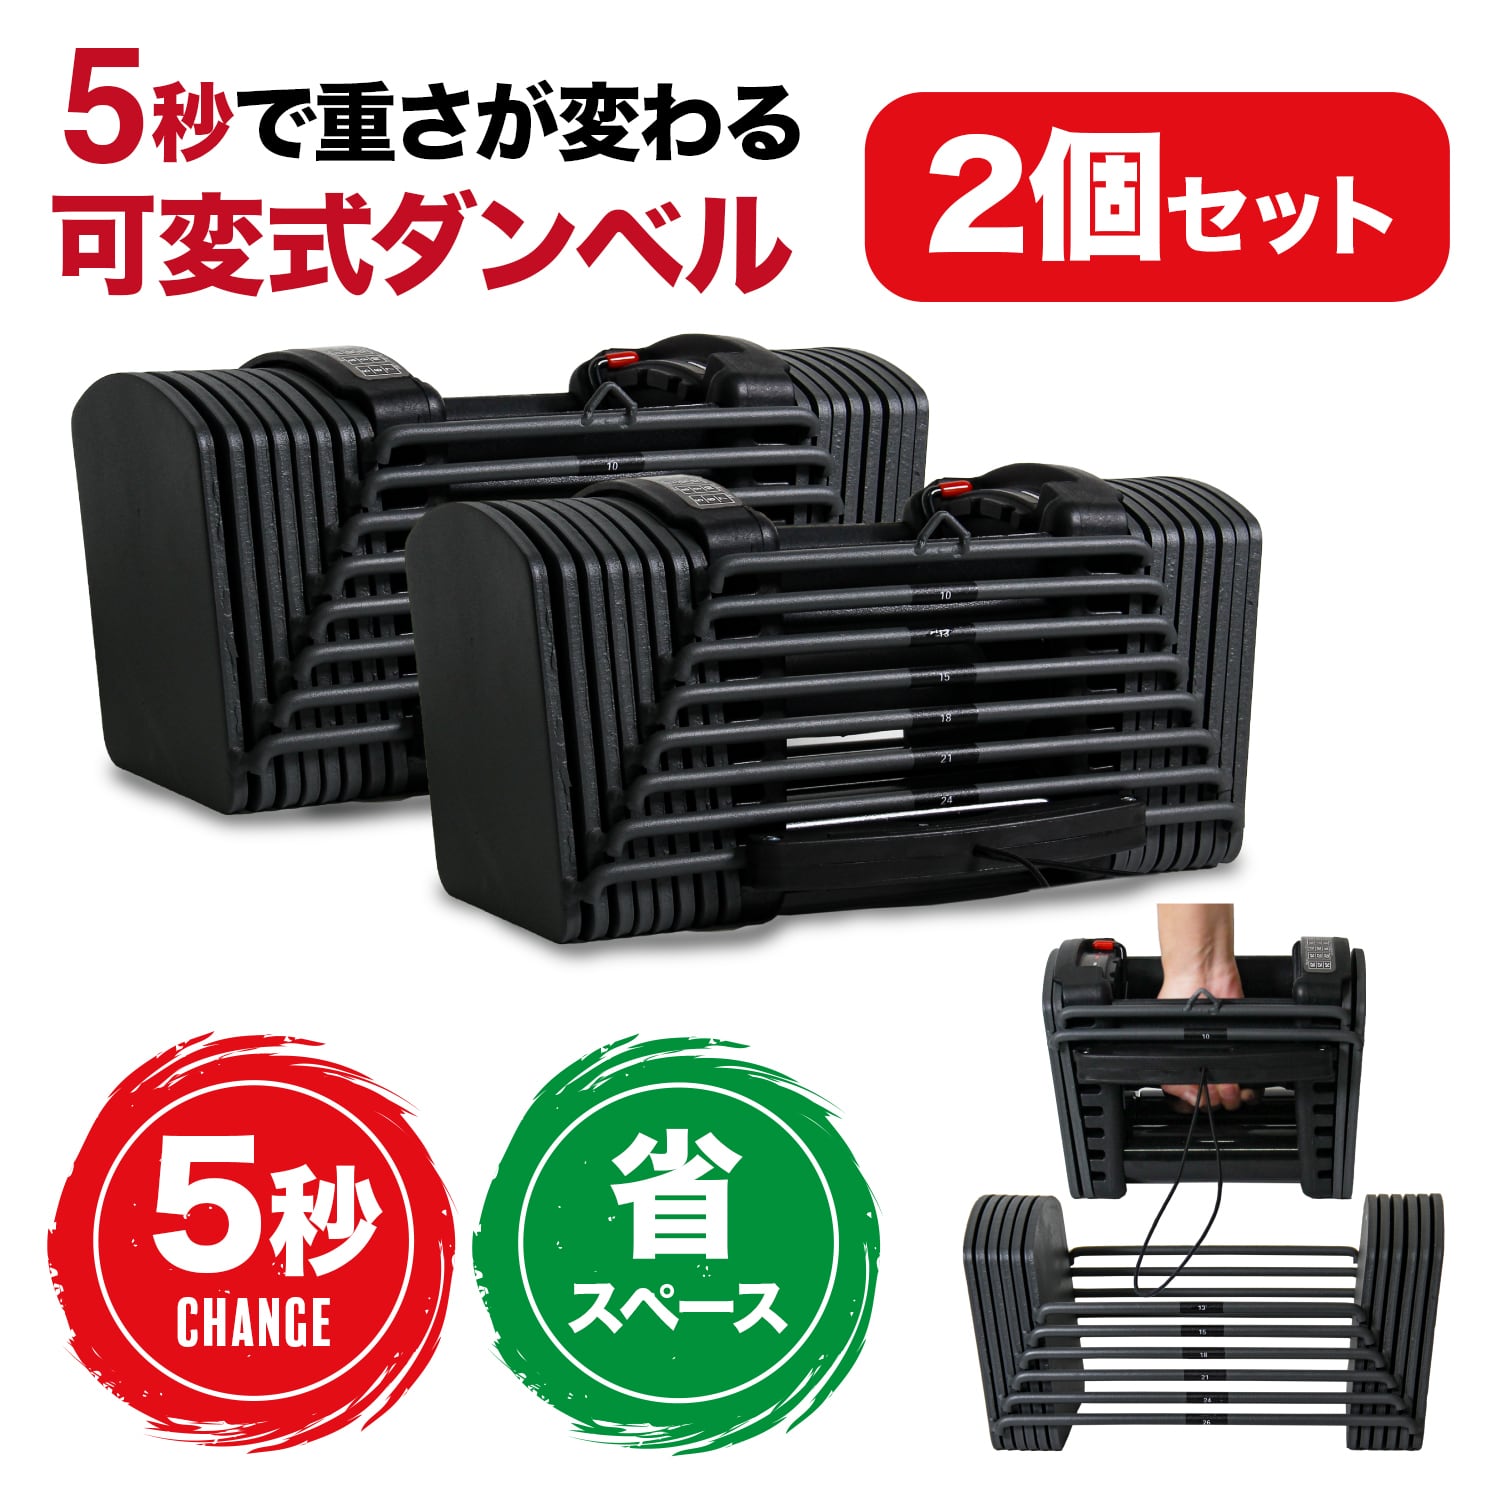 可変式ダンベル 5kg~26kg 2個セット | MRG JAPAN Direct